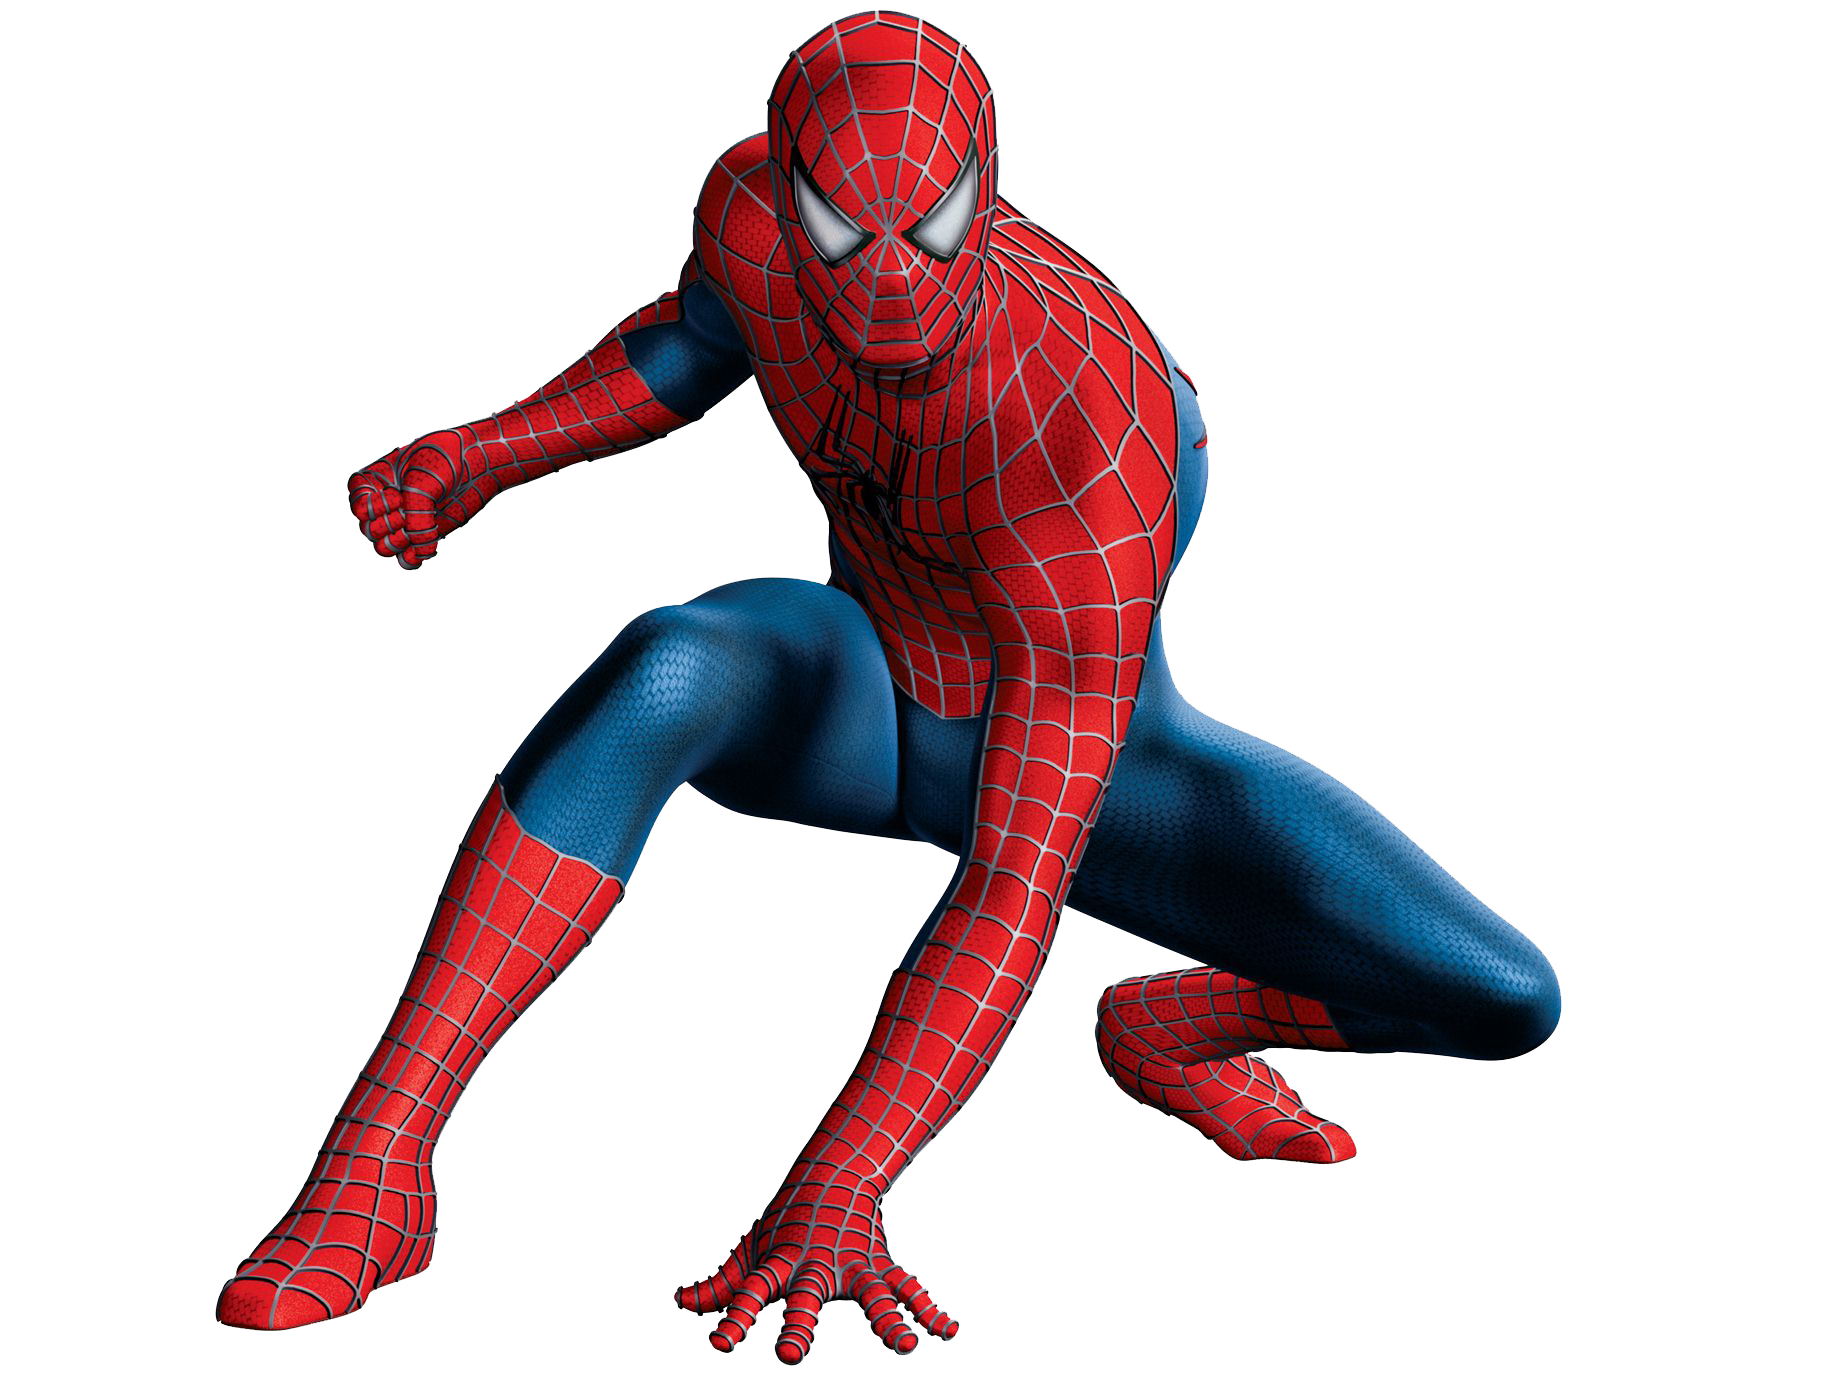 Download Spider-Man File HQ PNG Image FreePNGImg.